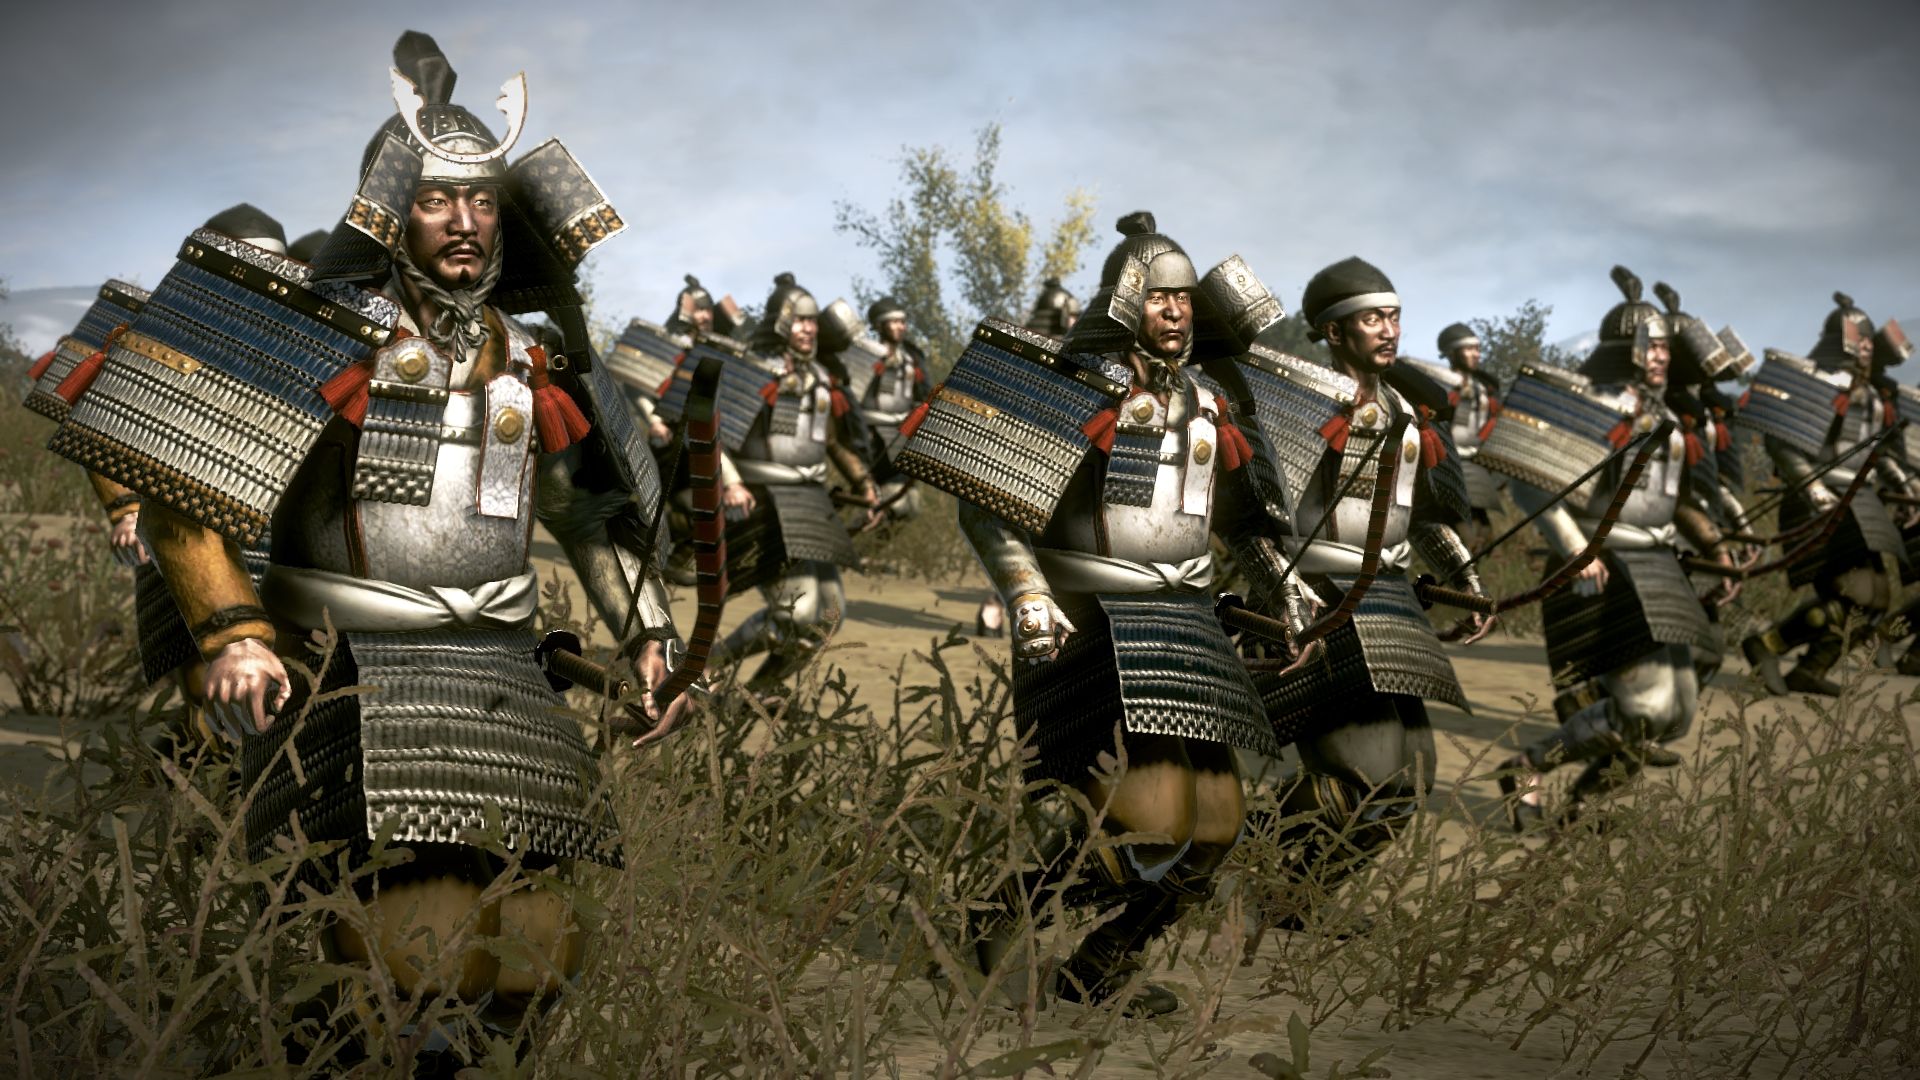 [$ 5.01] Total War: Shogun 2 - Rise of the Samurai Campaign DLC EU Steam CD Key